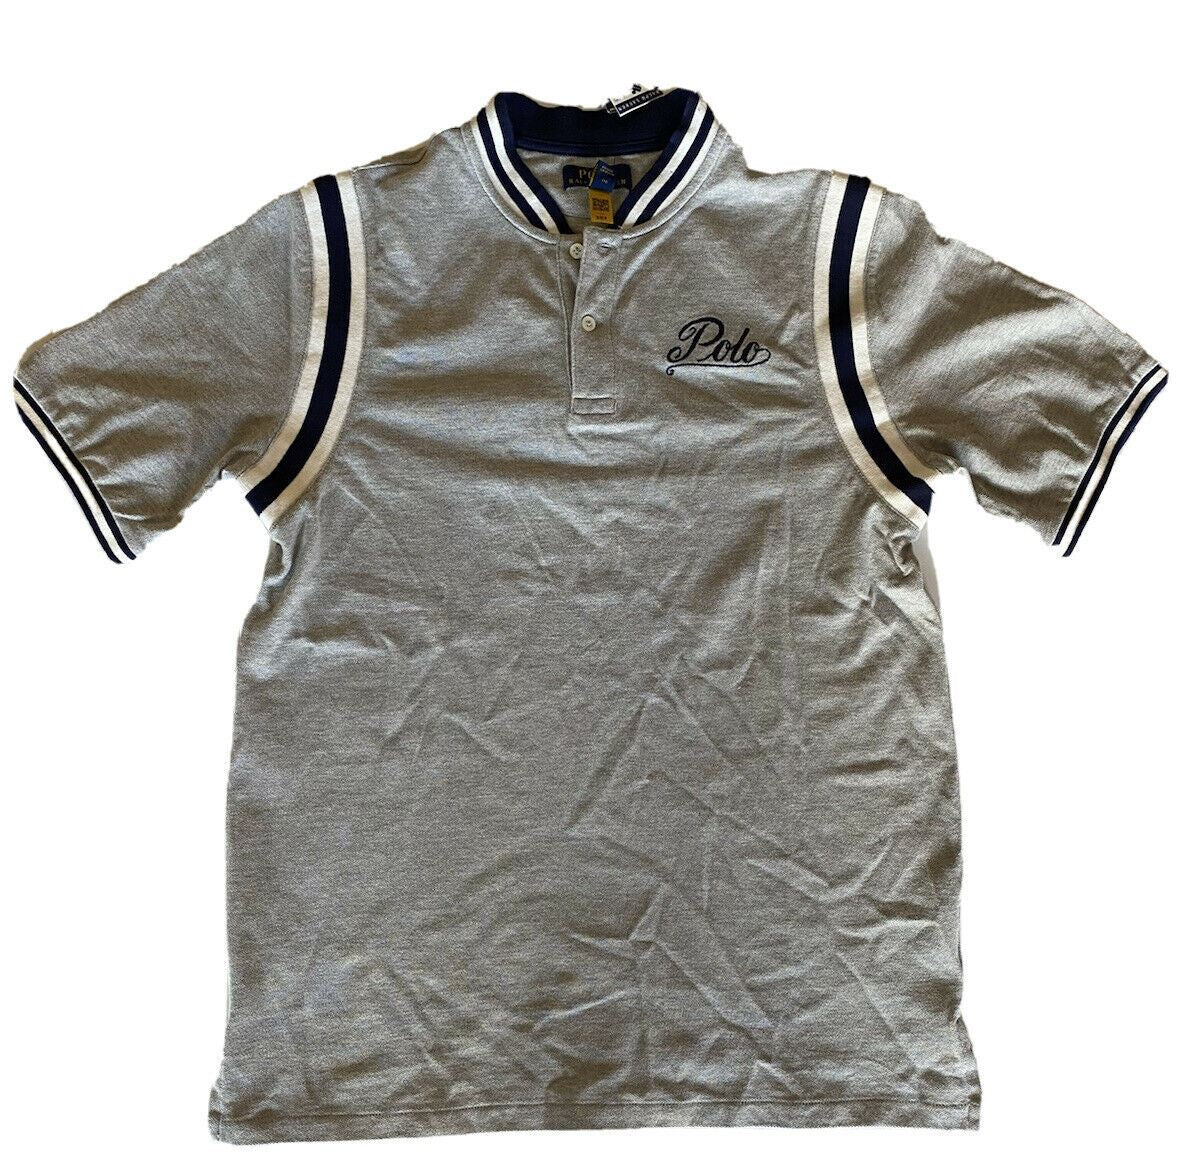 NWT $79.99 Polo Ralph Lauren Tiger Boy's Polo Tee Size XL (18-20)